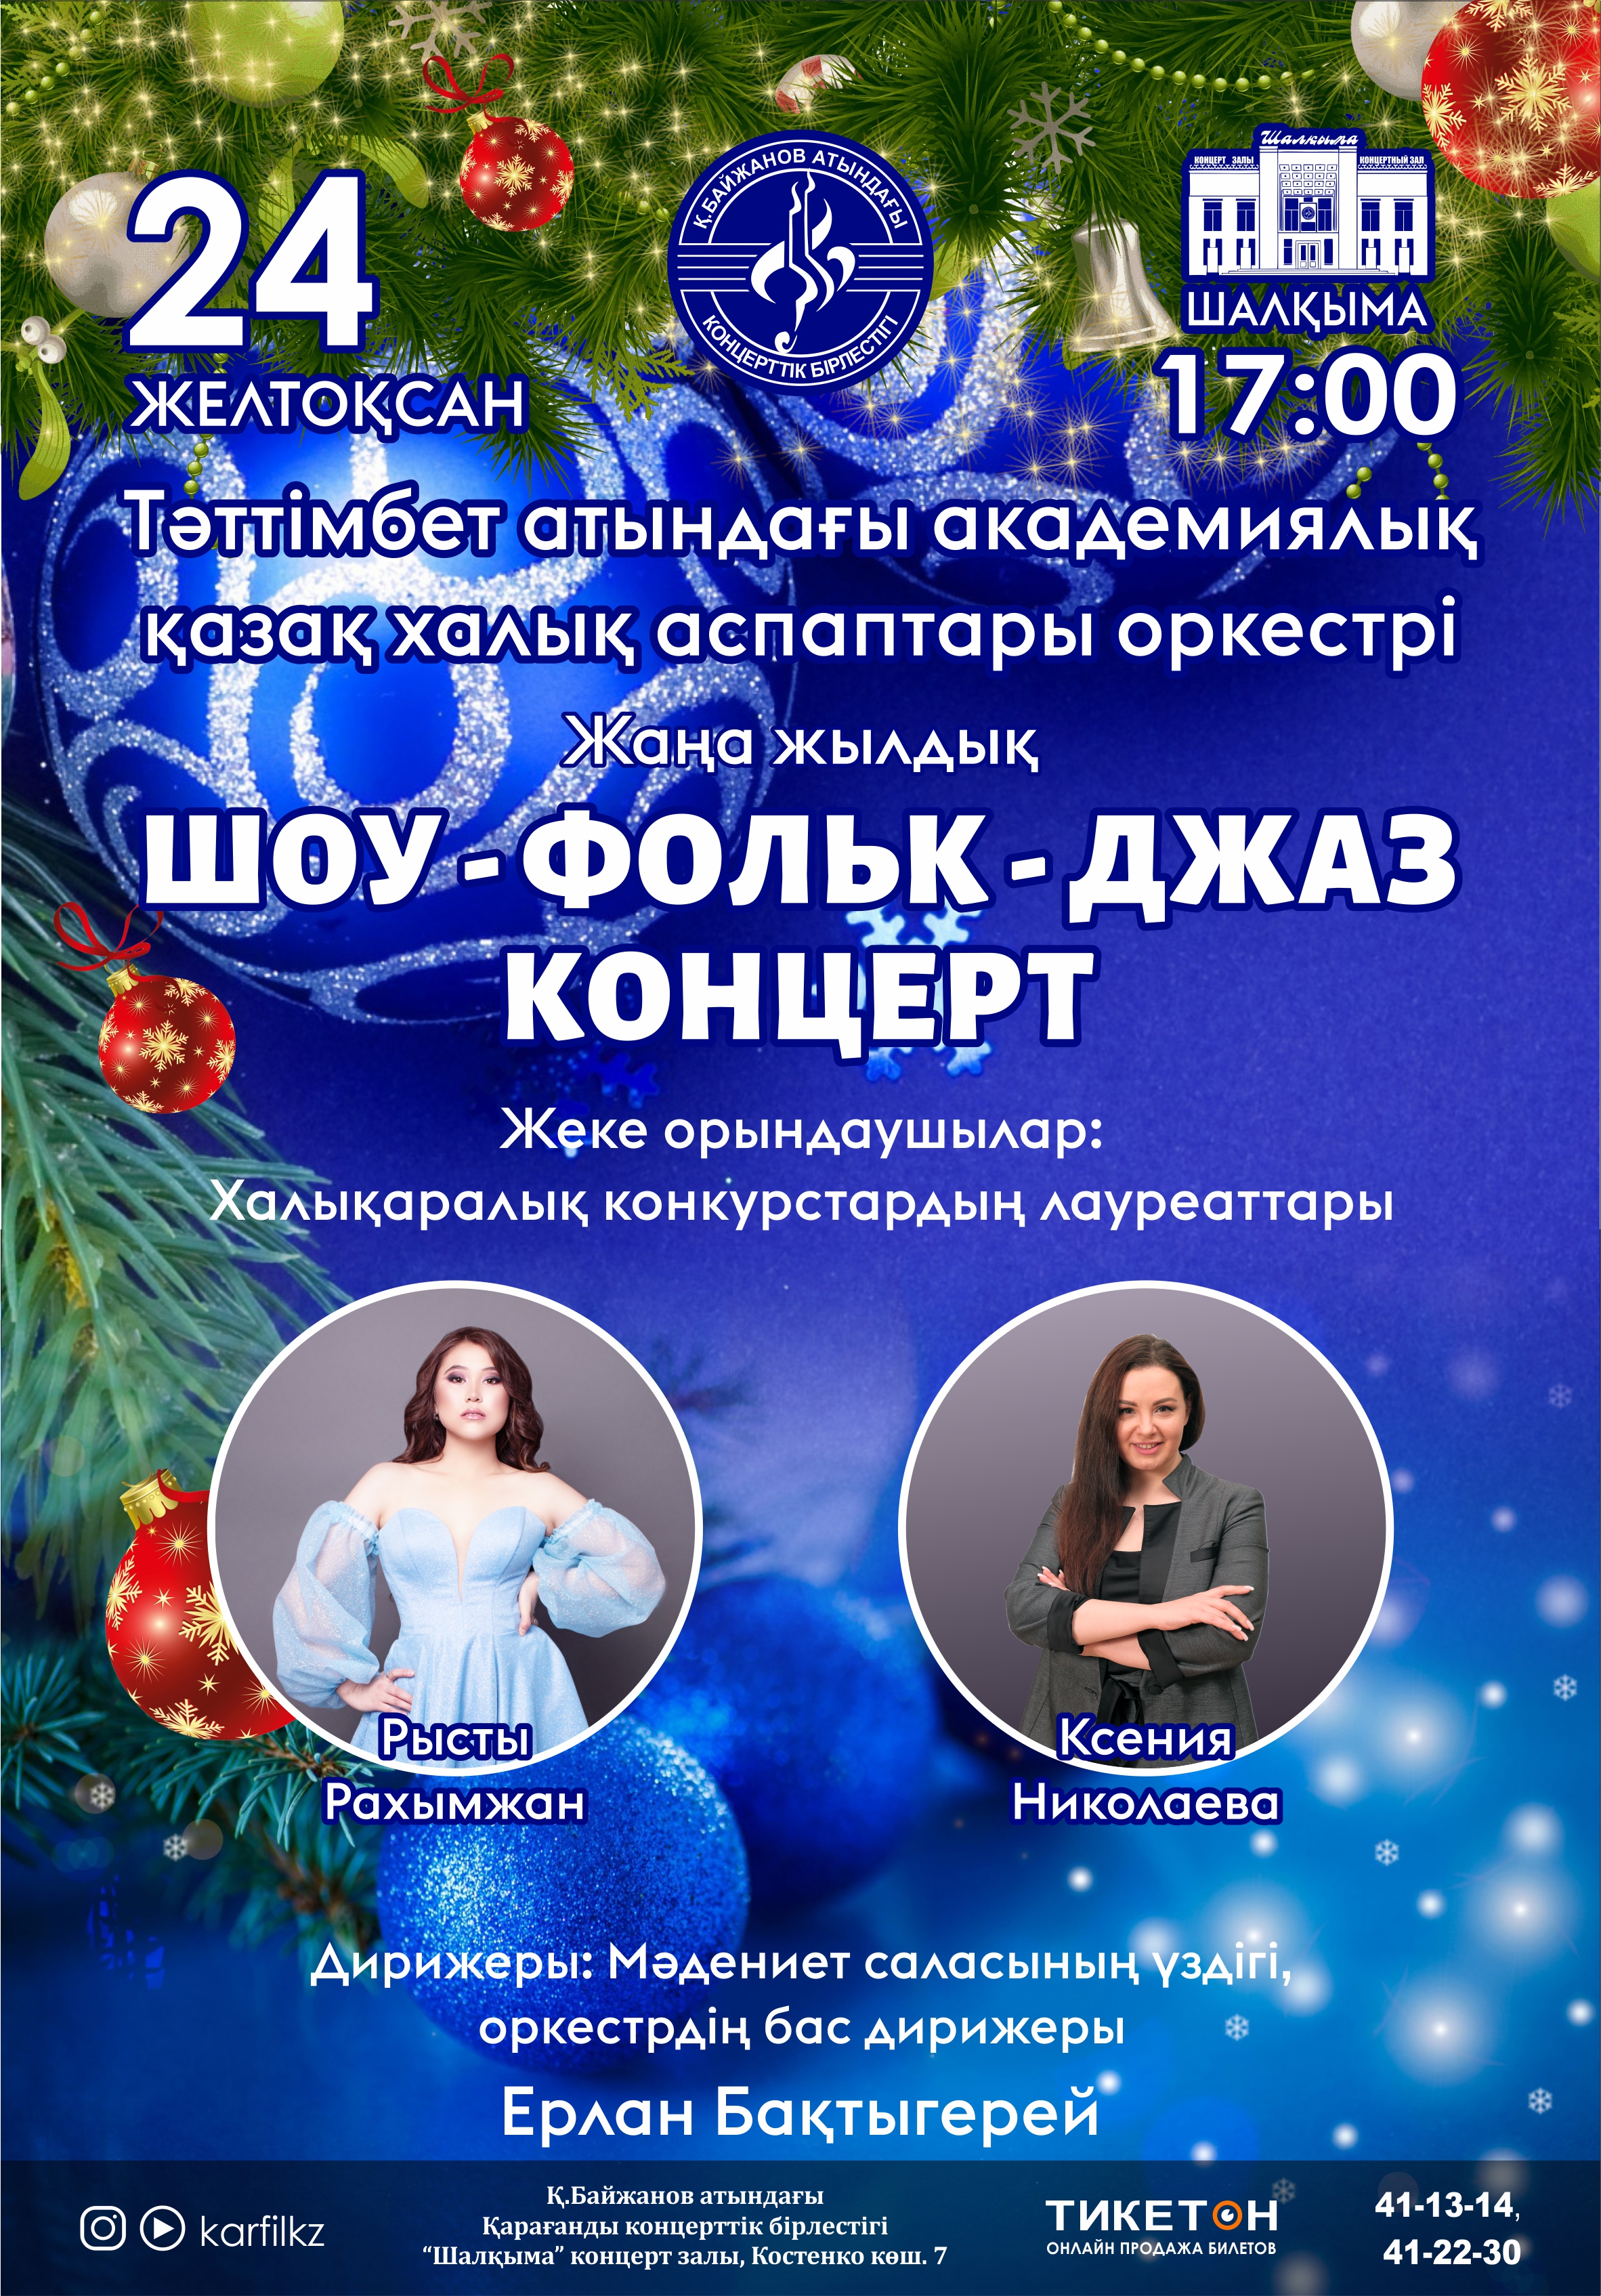 Новогодний концерт академического оркестра казахских народных инструментов имени Таттимбета